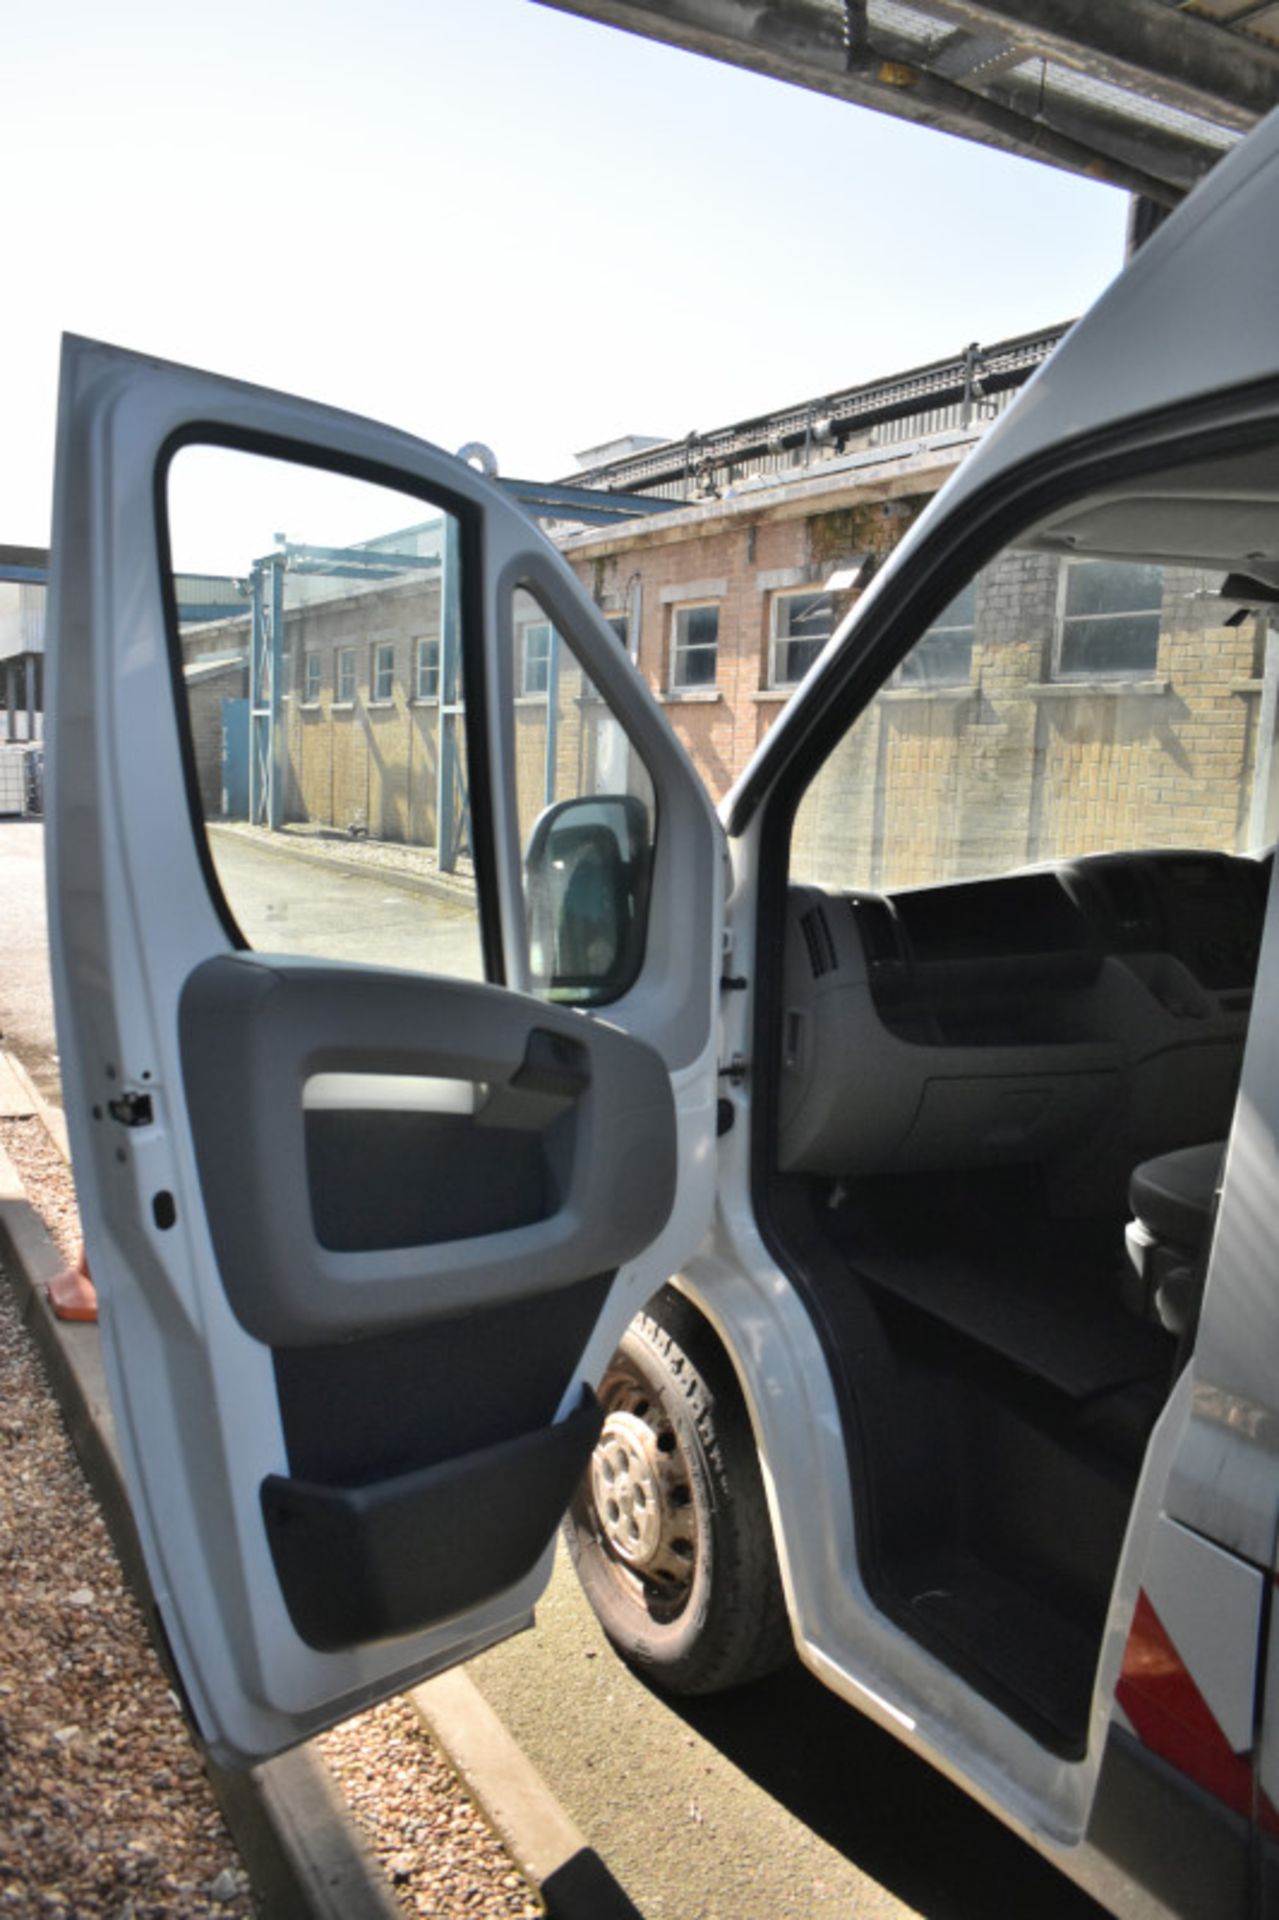 Peugeot LWB white electric van - Panel van - 2 axle rigid body - vehicle category N1 - Image 21 of 28